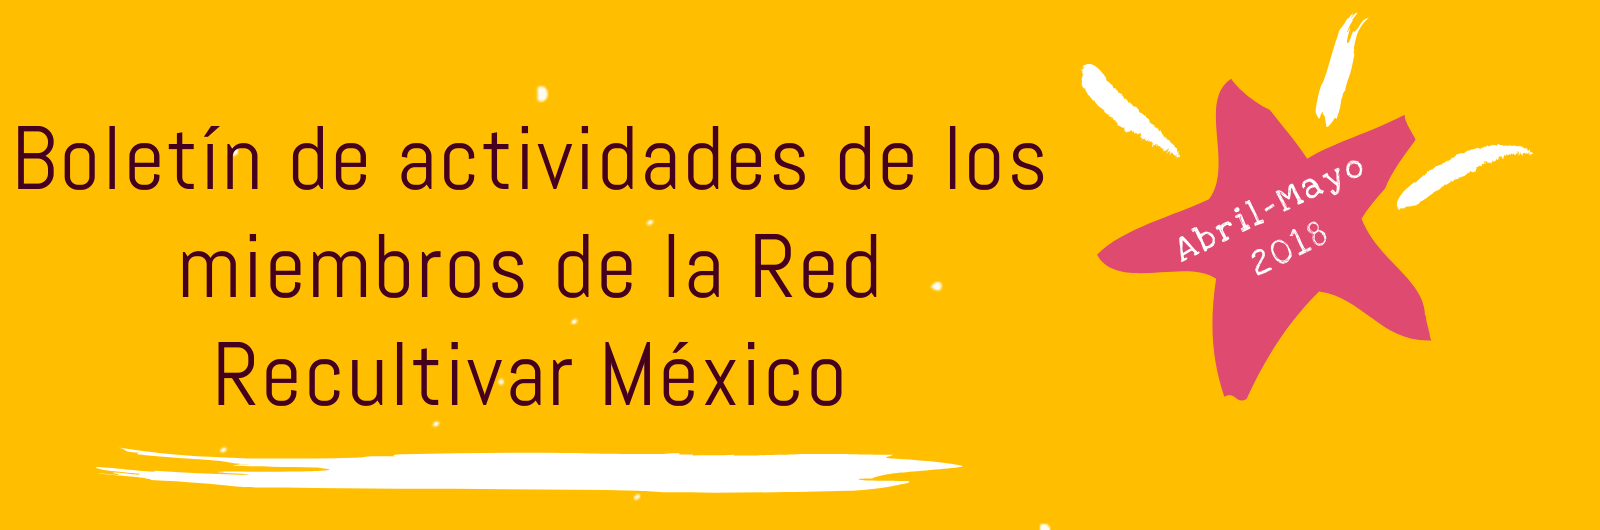 Boletín de Actividades Abril/Mayo 2018. Recultivar México, Red de Cultura Viva Comunitaria